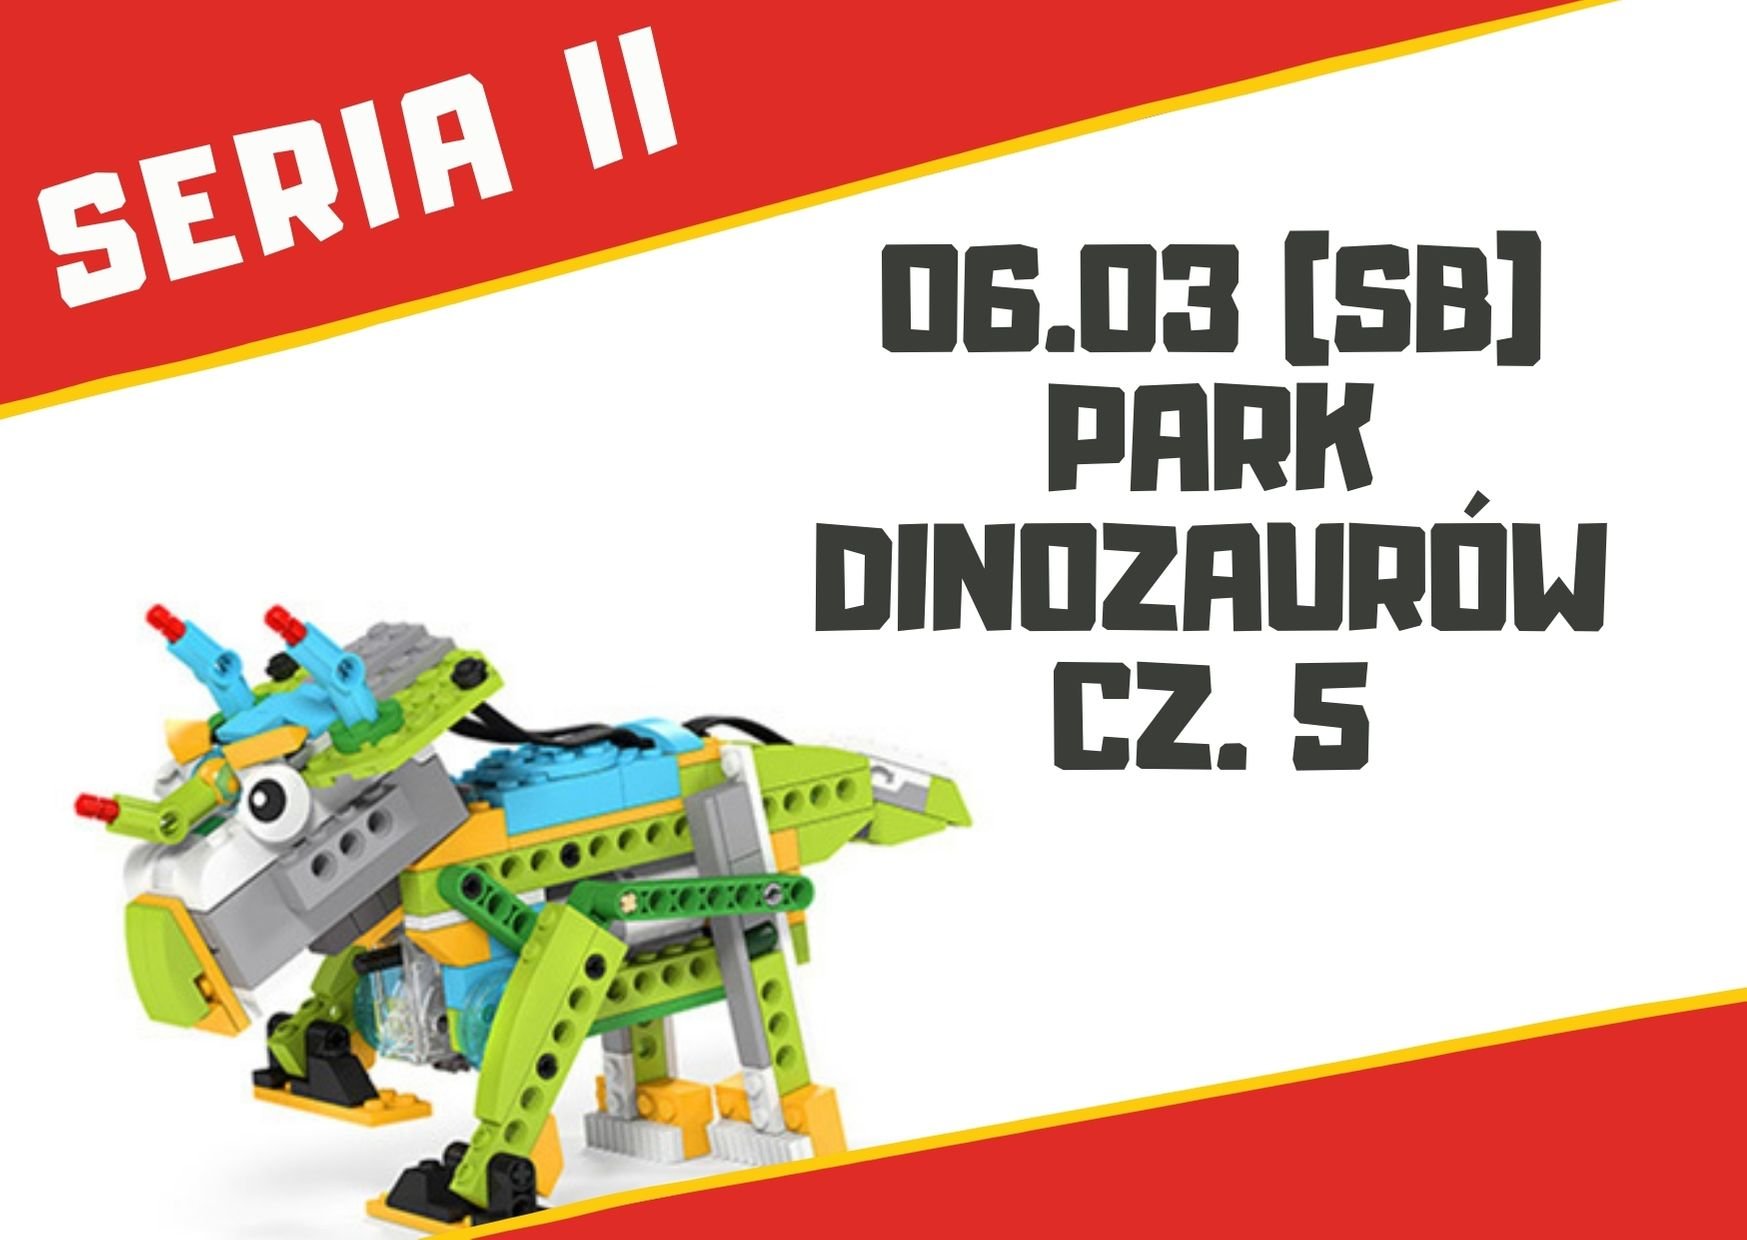 Park Dinozaurów cz. 5 - warsztaty robotyki dla dzieci 7+ lat